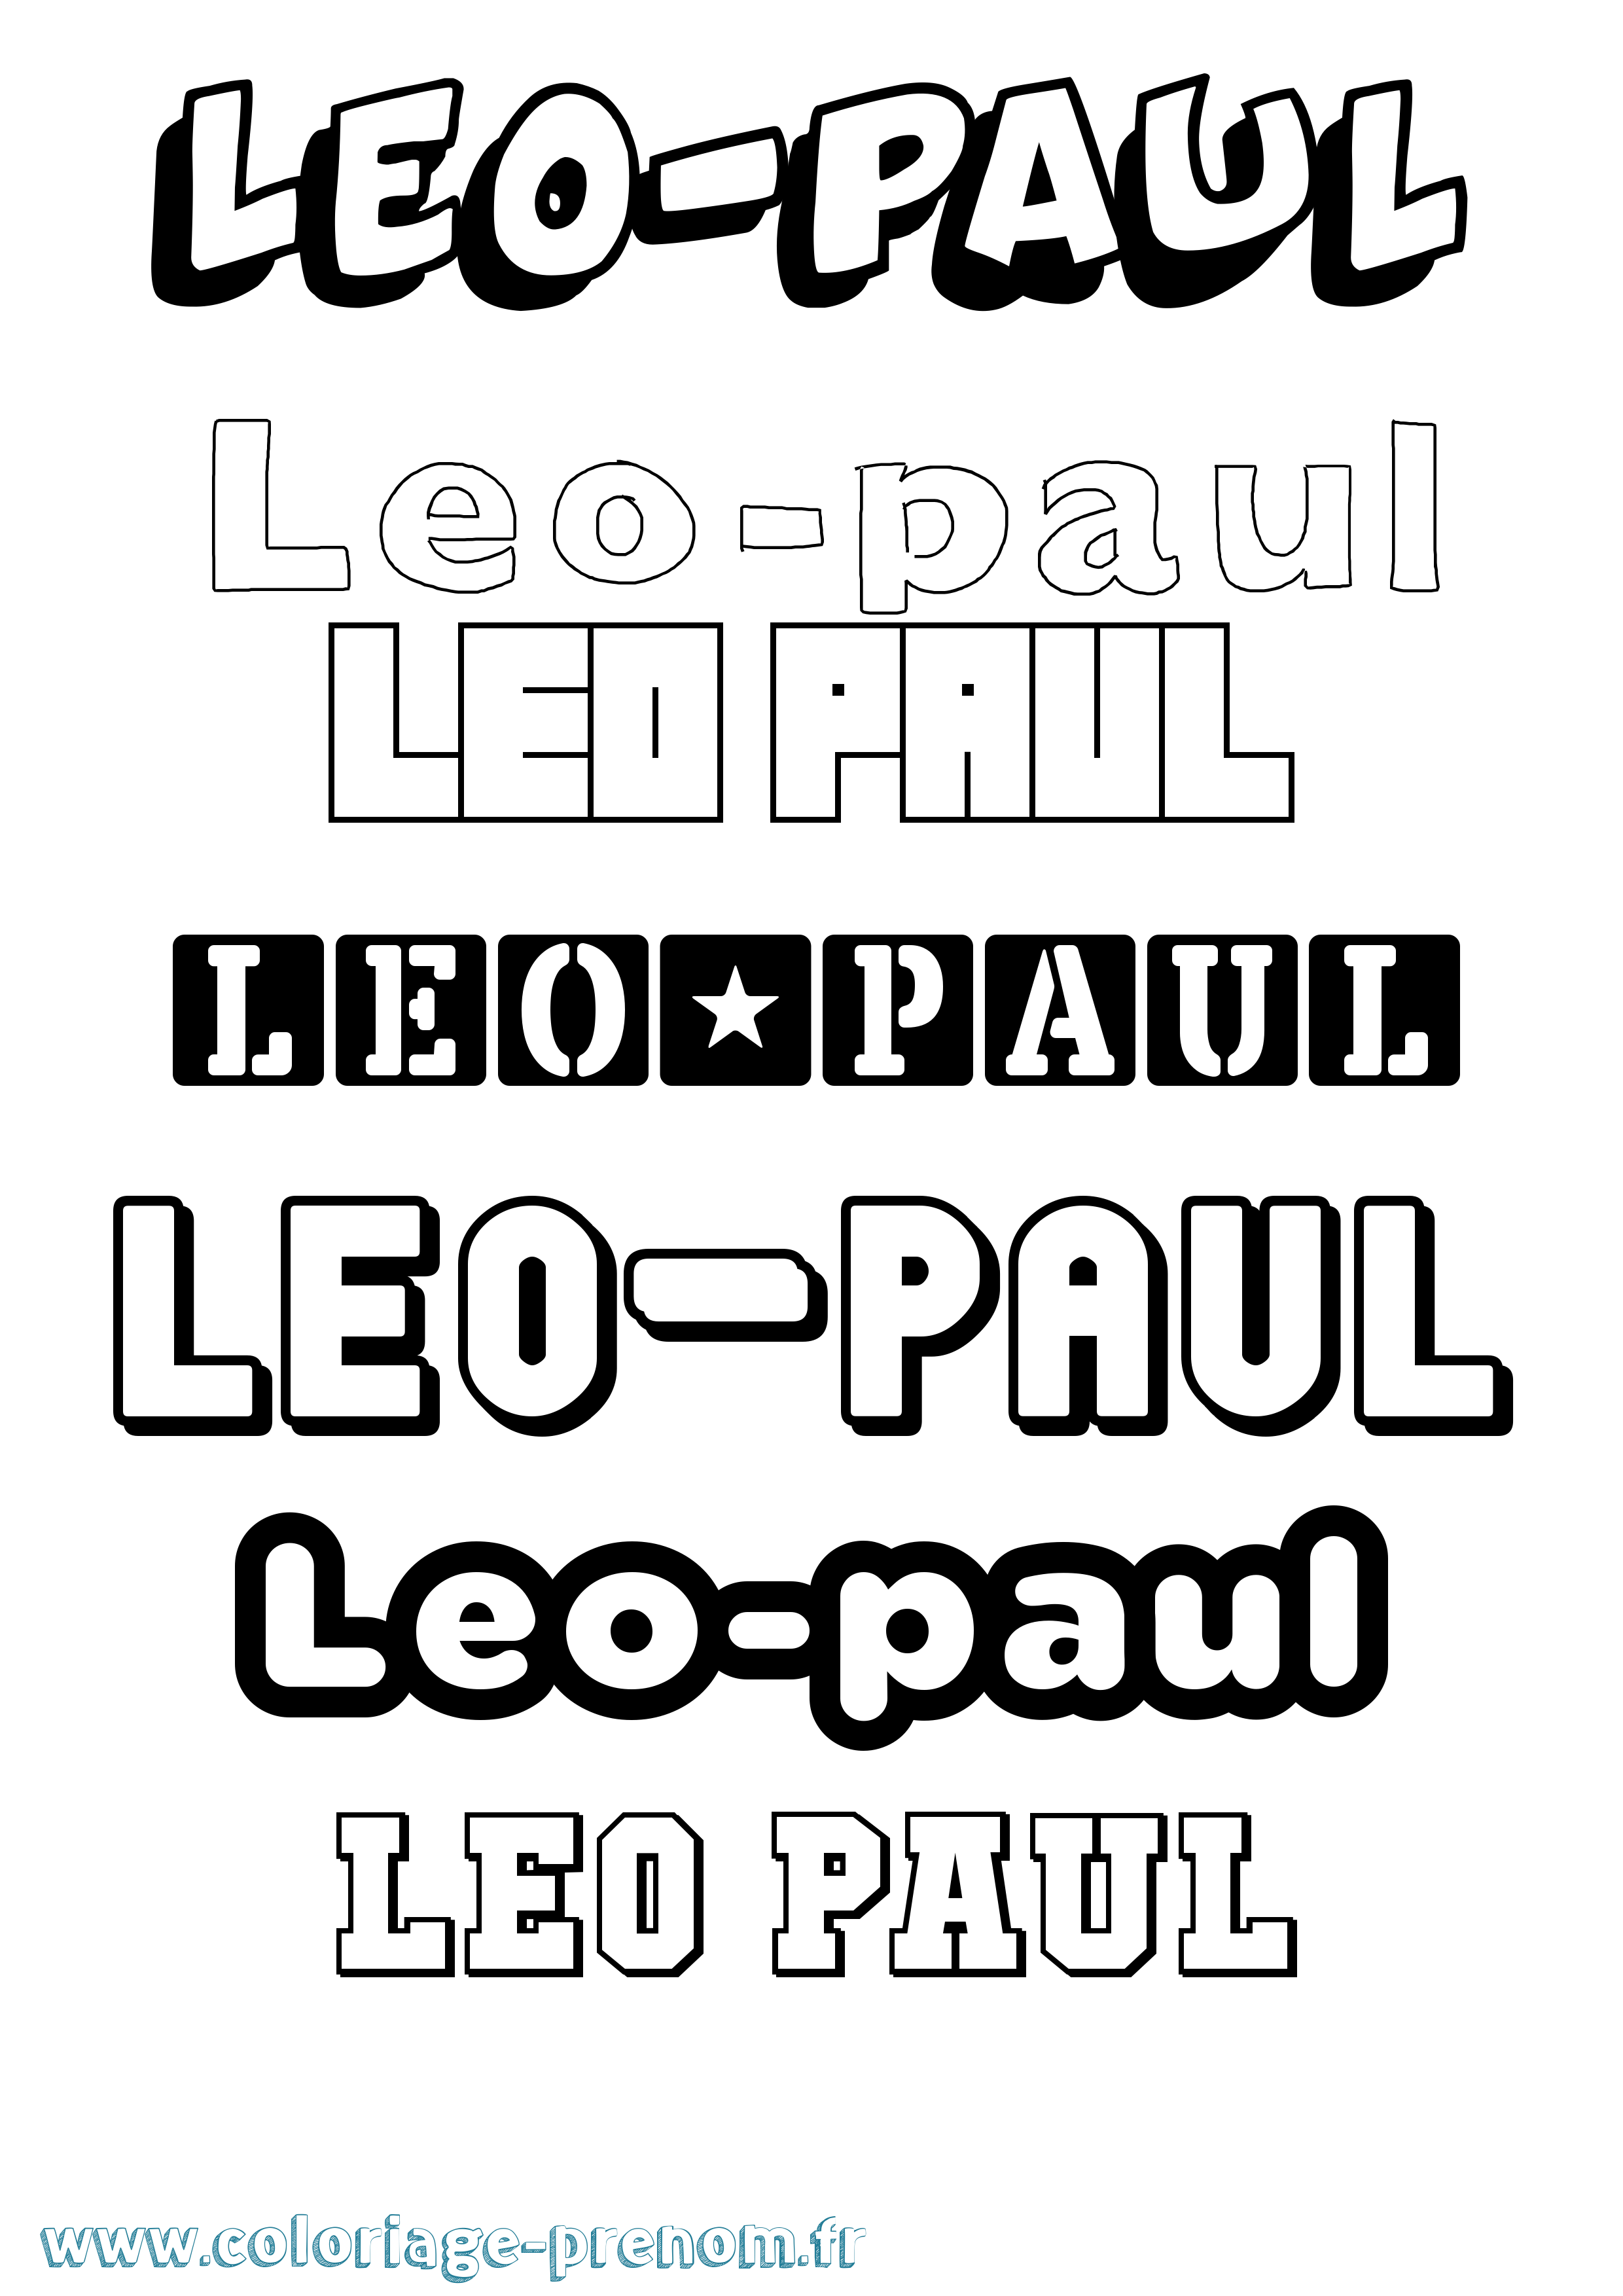 Coloriage prénom Leo-Paul Simple